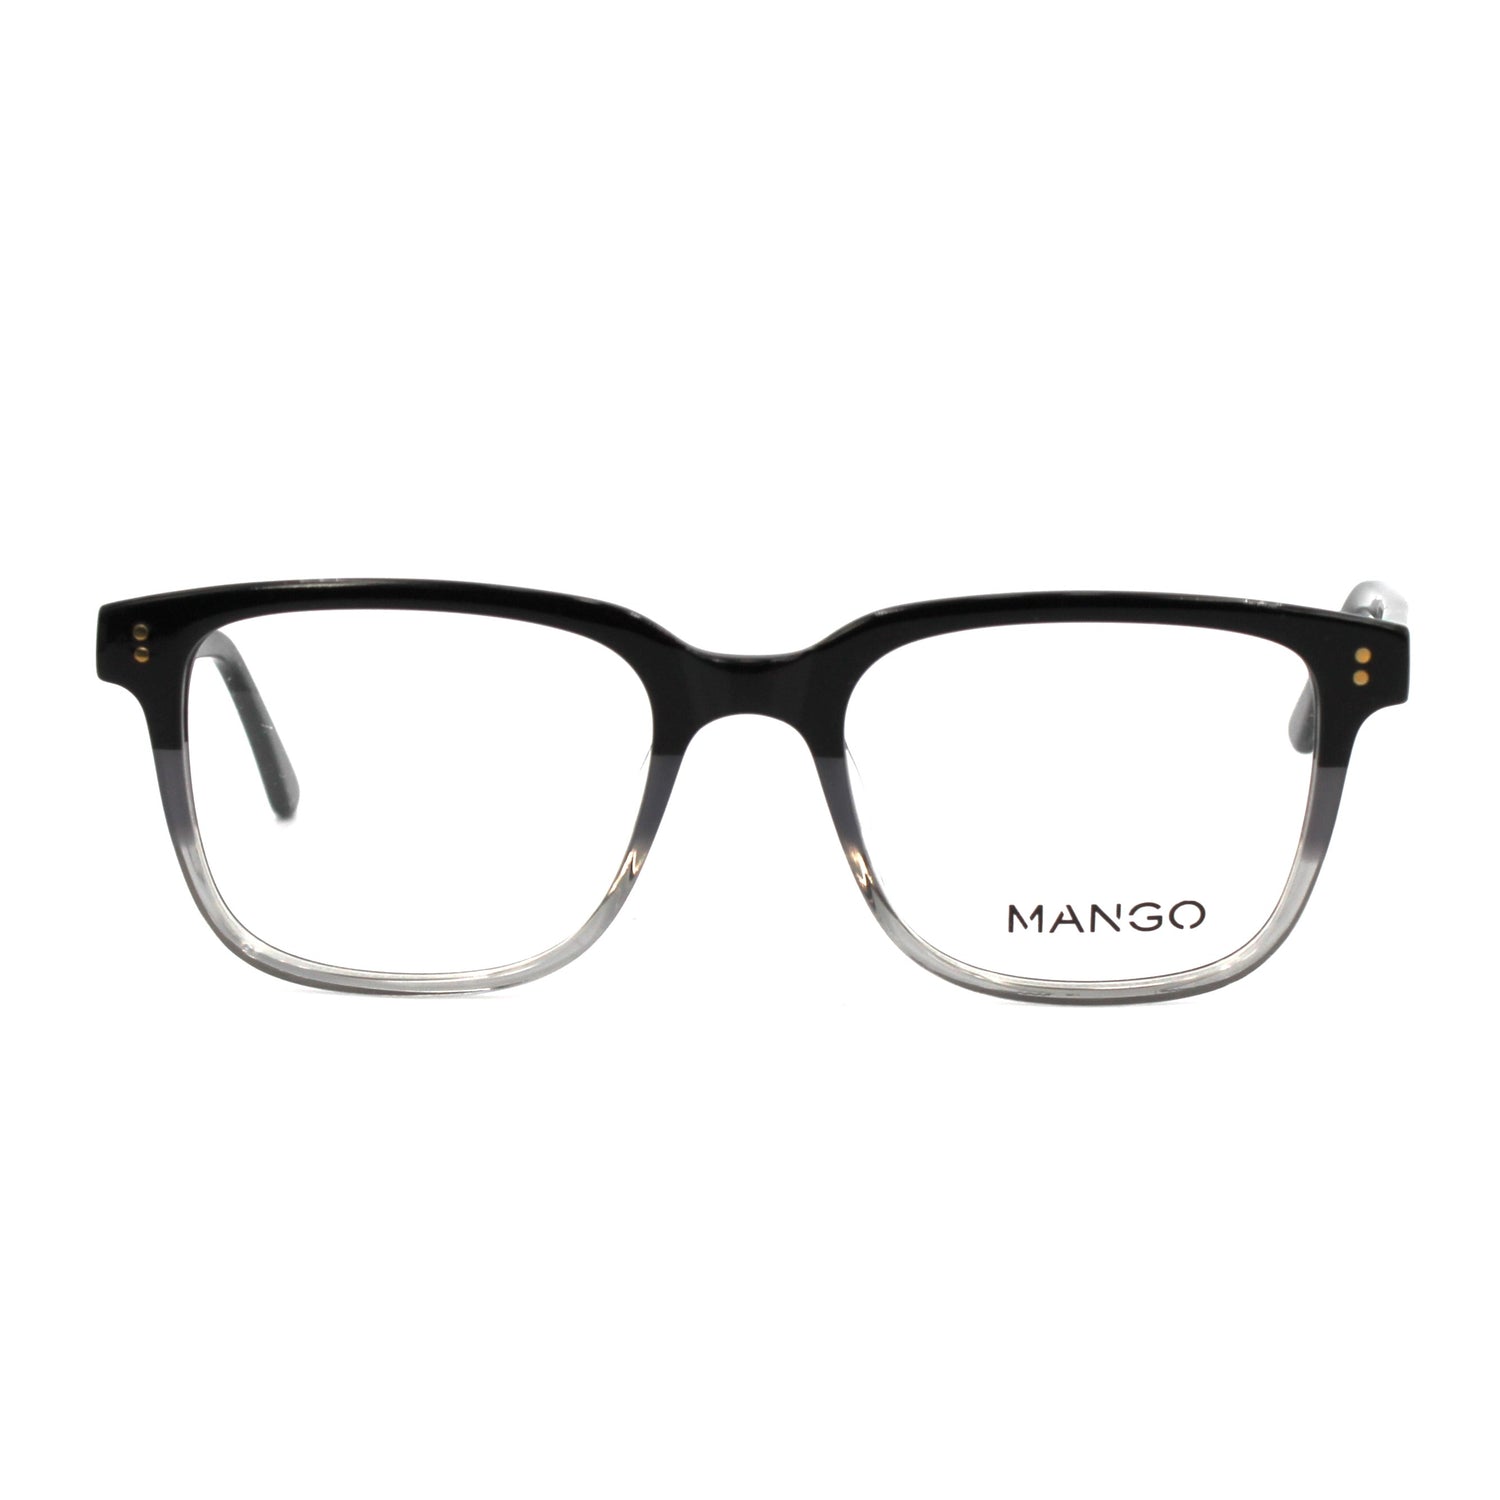 Montatura per occhiali MANGO | Modello MNG186411